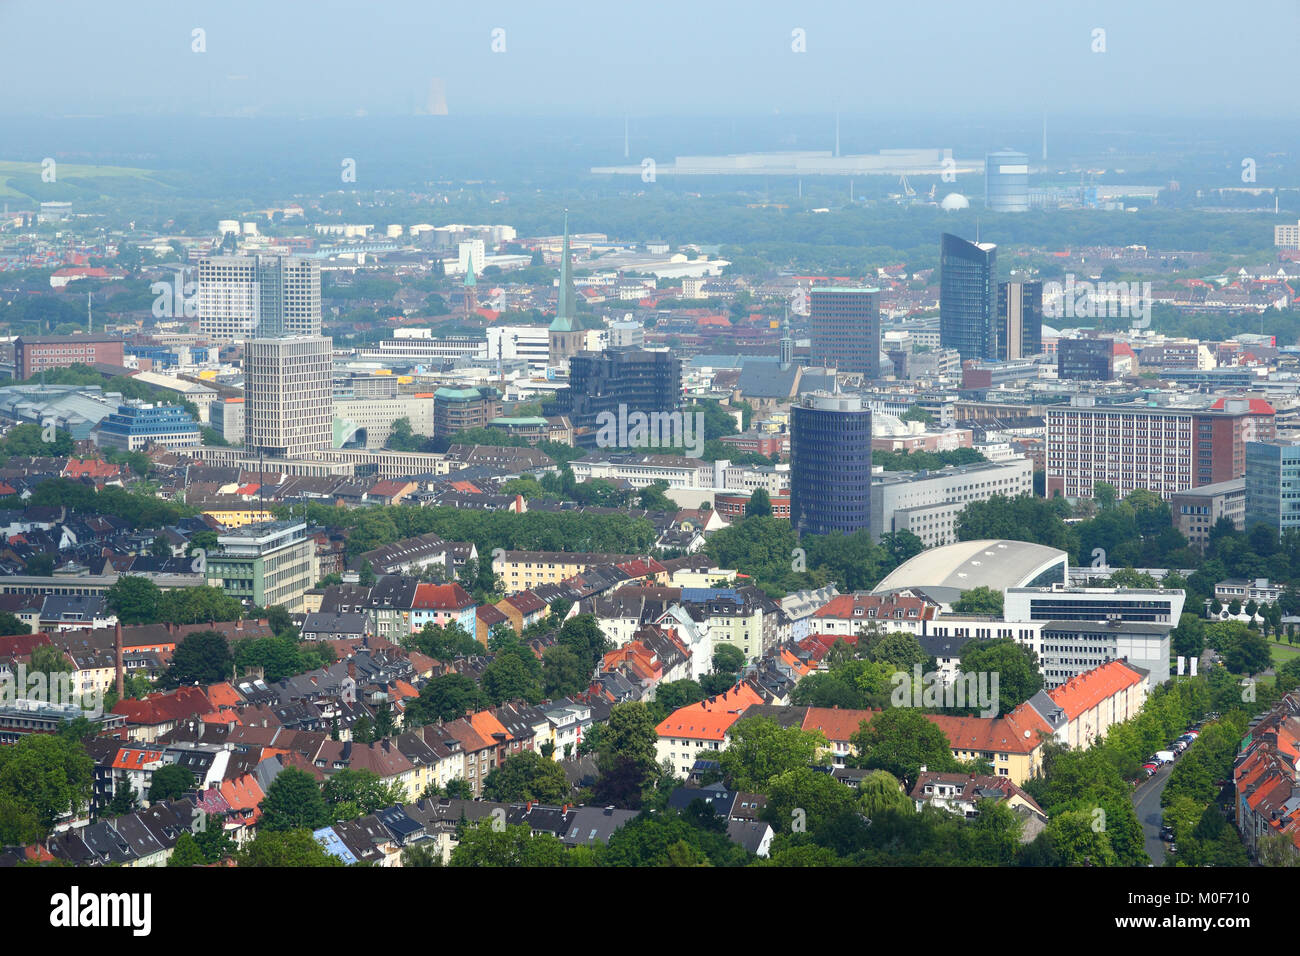 Dortmund - Stadt in der Metropolregion Ruhrgebiet (Ruhrgebiet) in Deutschland. Luftaufnahme. Stockfoto